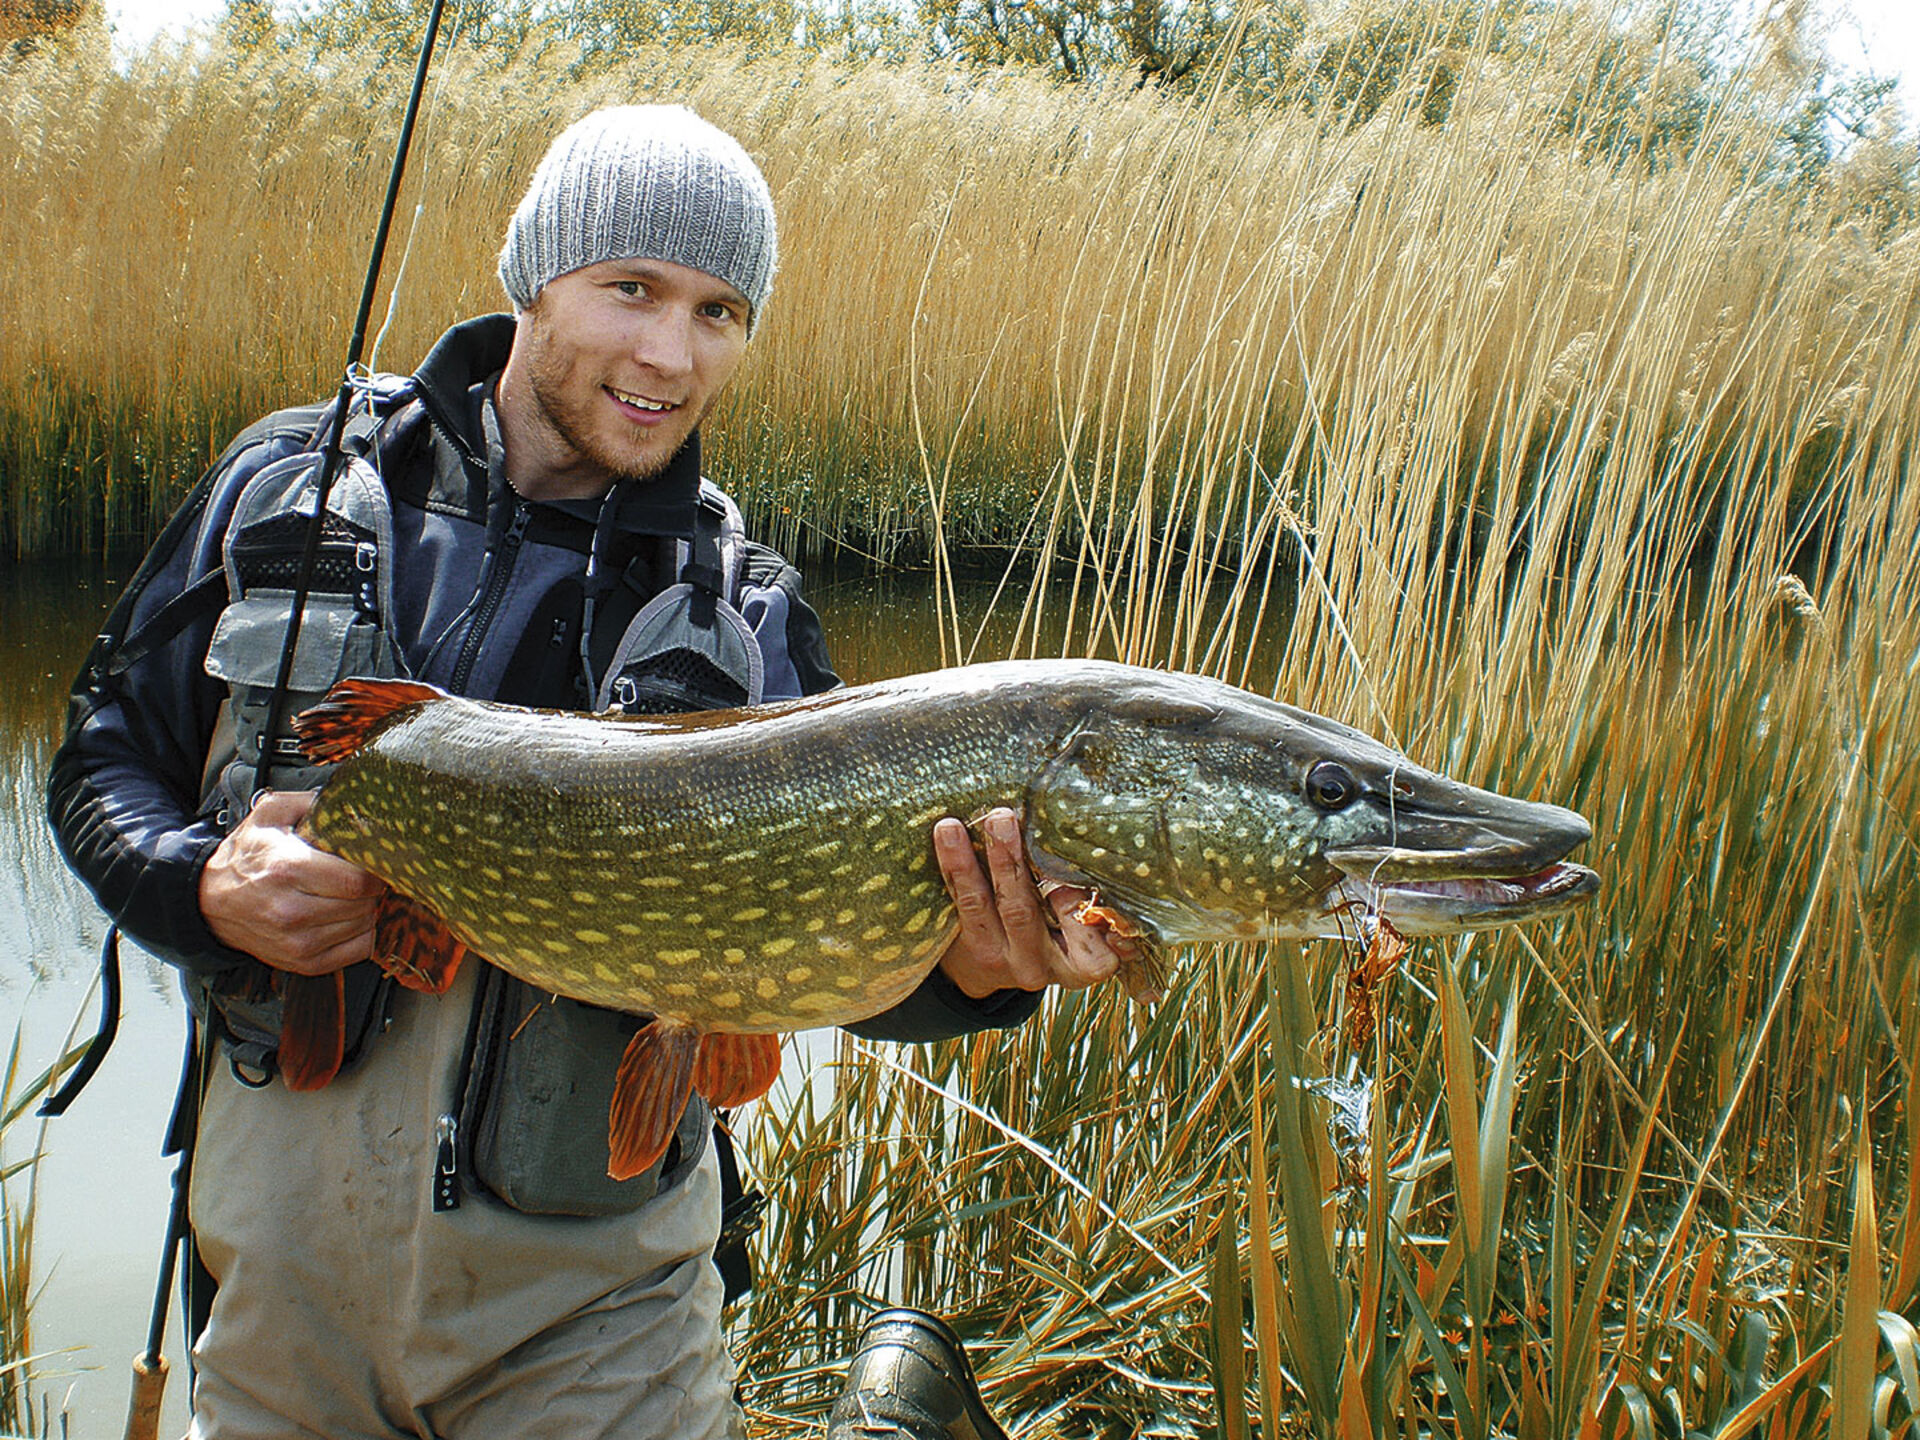  Rasmus Ovesen empfiehlt beim Streamerfischen auf Winterhechte eine abwechslungsreiche Köderführung.  